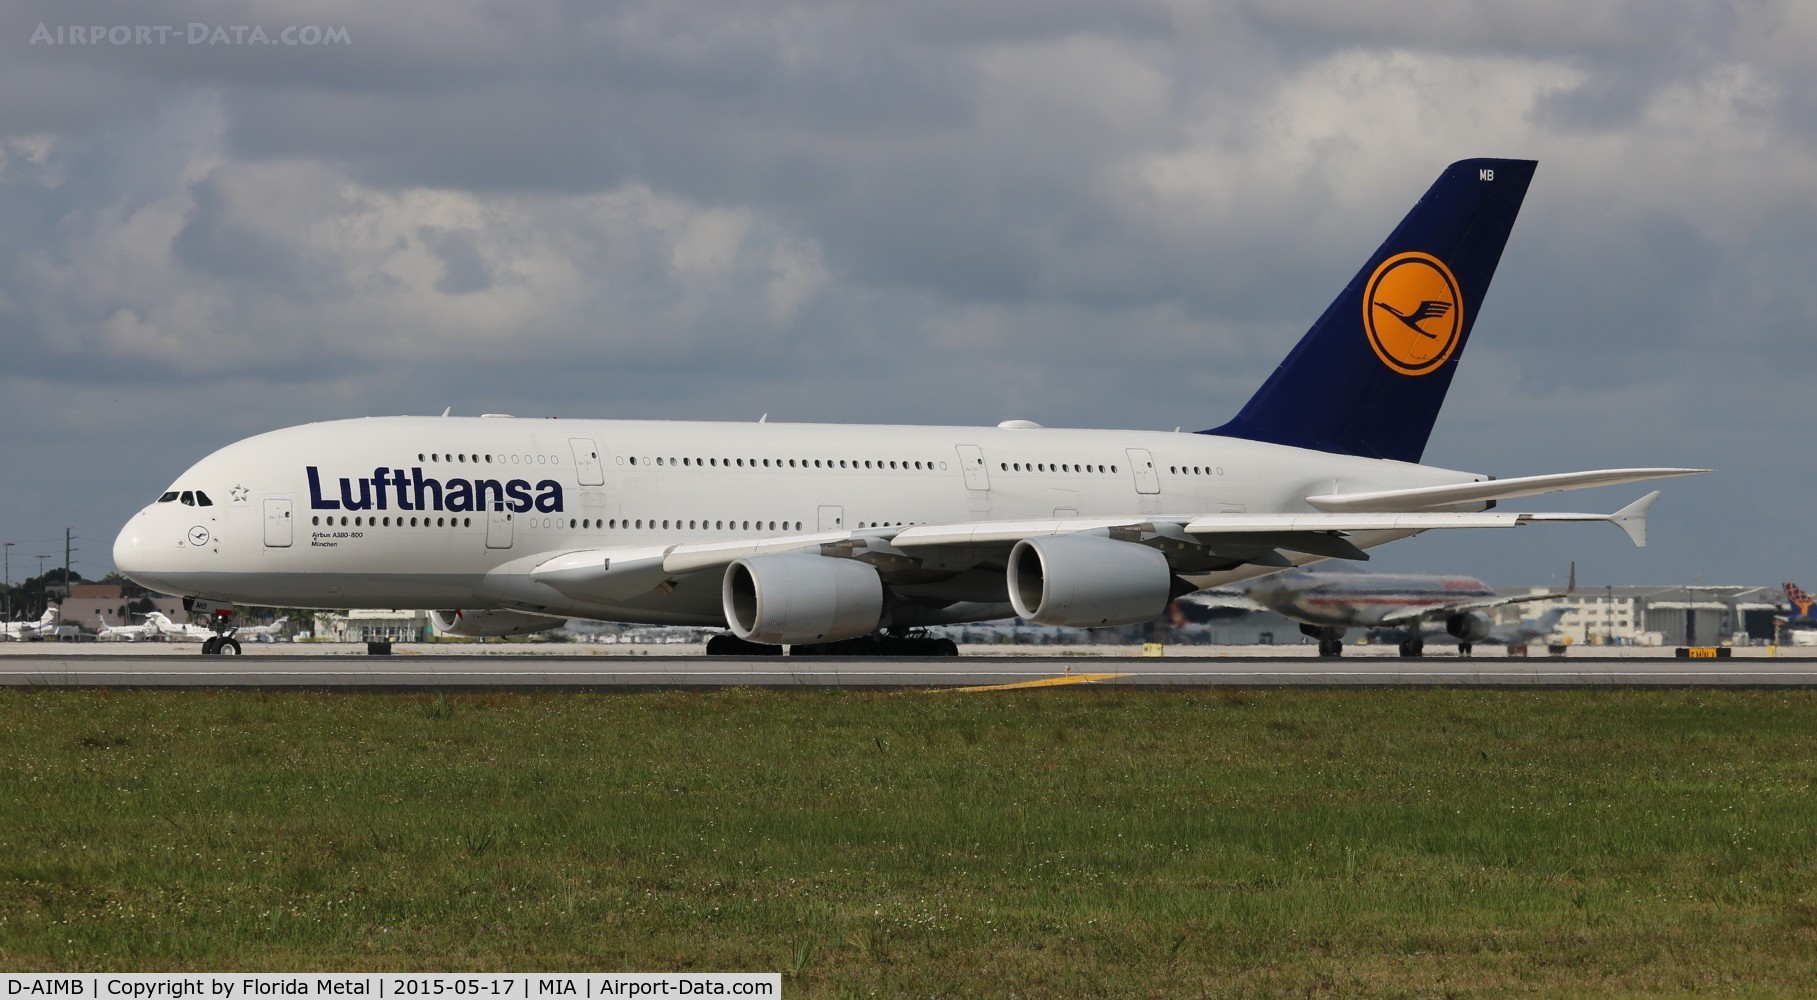 D-AIMB, 2010 Airbus A380-841 C/N 041, Lufthansa